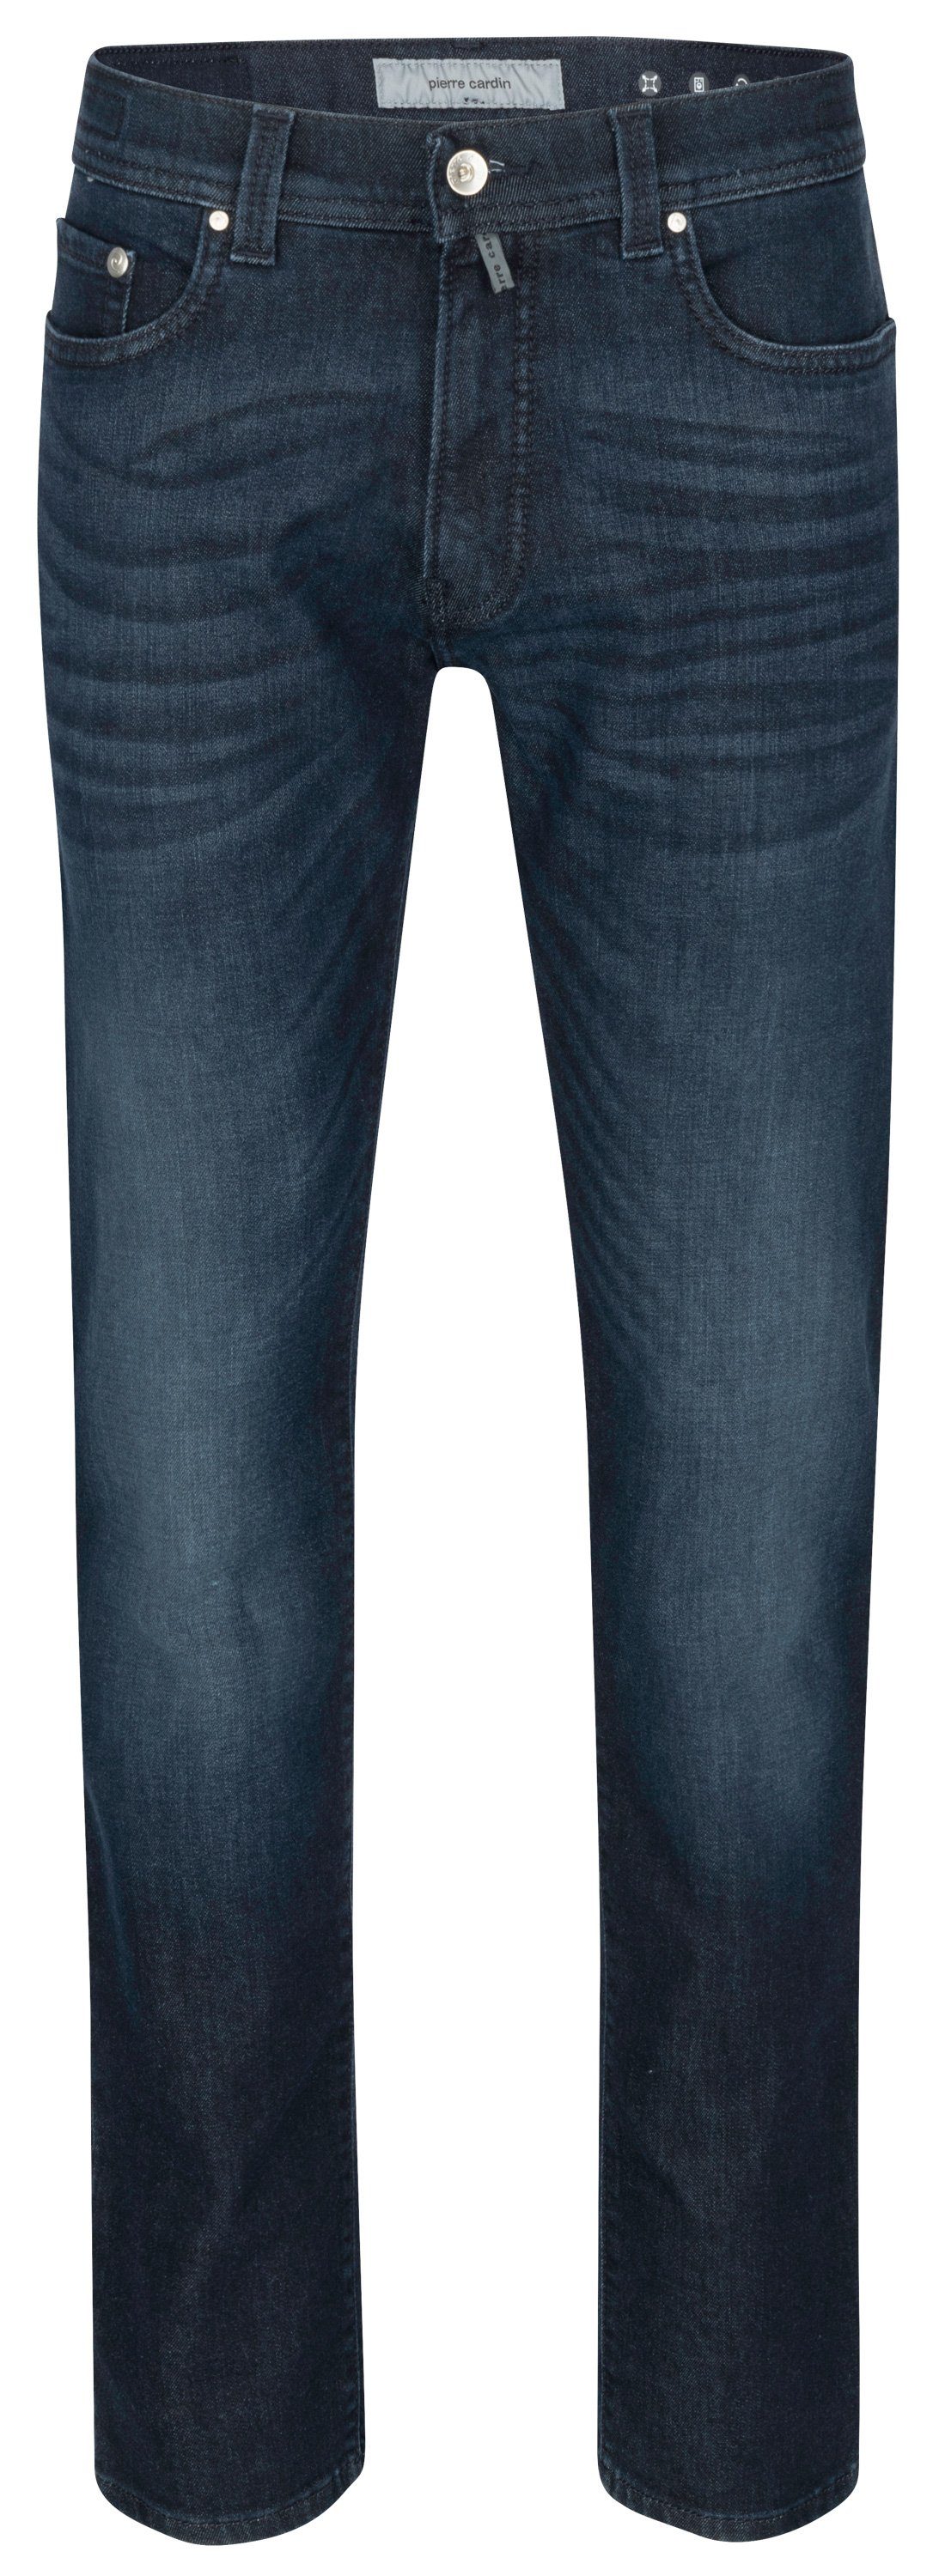 Pierre TAPERED PIERRE Cardin dark 5-Pocket-Jeans - used CARDIN LYON blue 38510 buffies 8105.6814